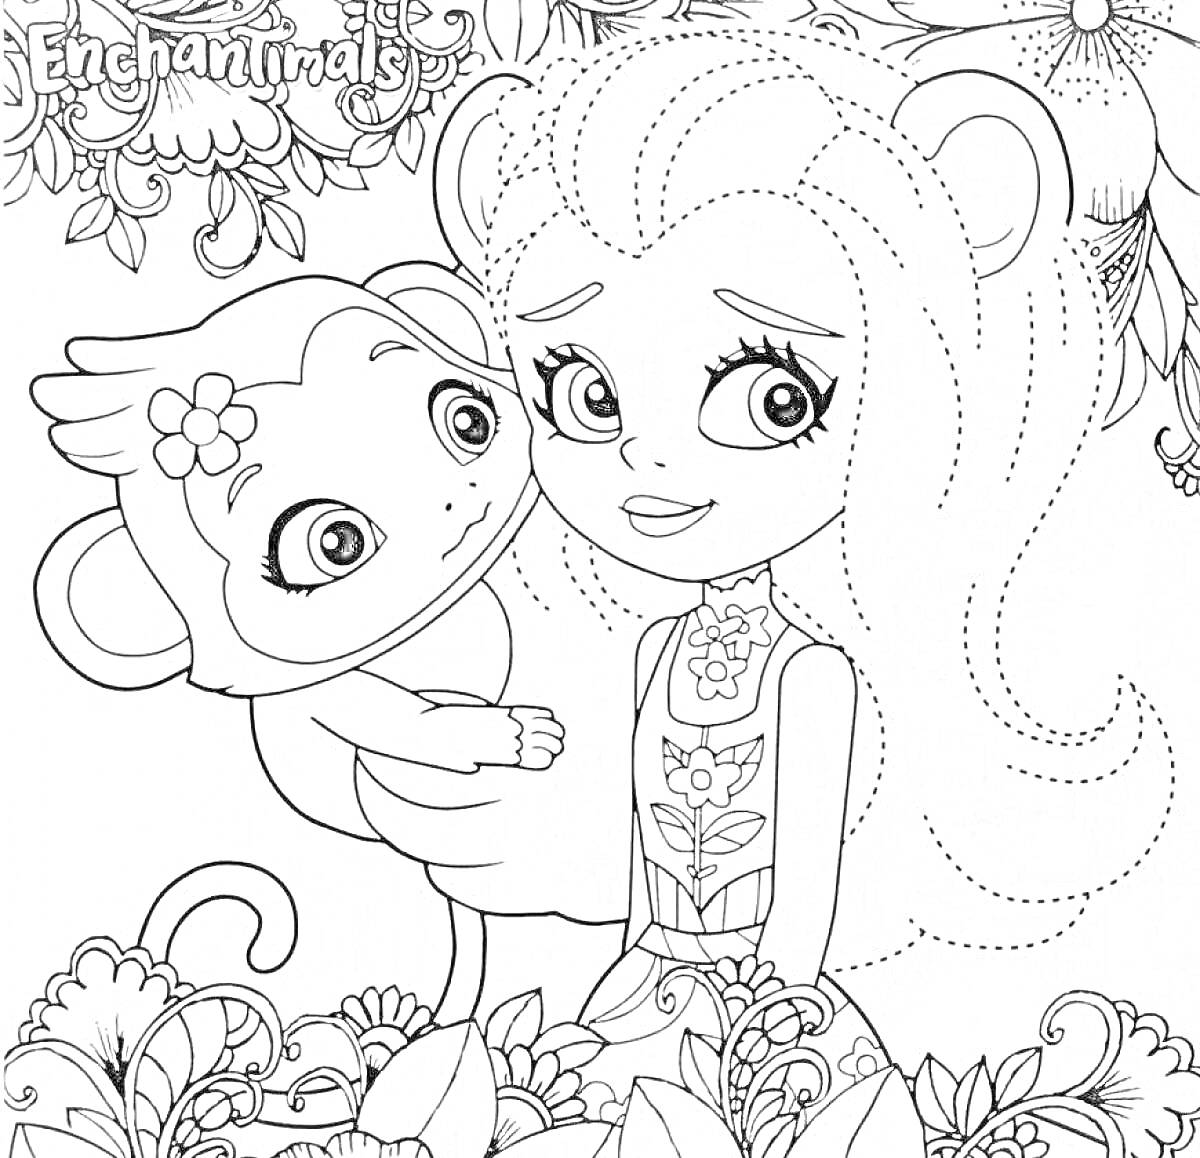 Раскраска Девочка с ушками и длинными волосами держит маленькую обезьянку, окружённые цветами и листвой